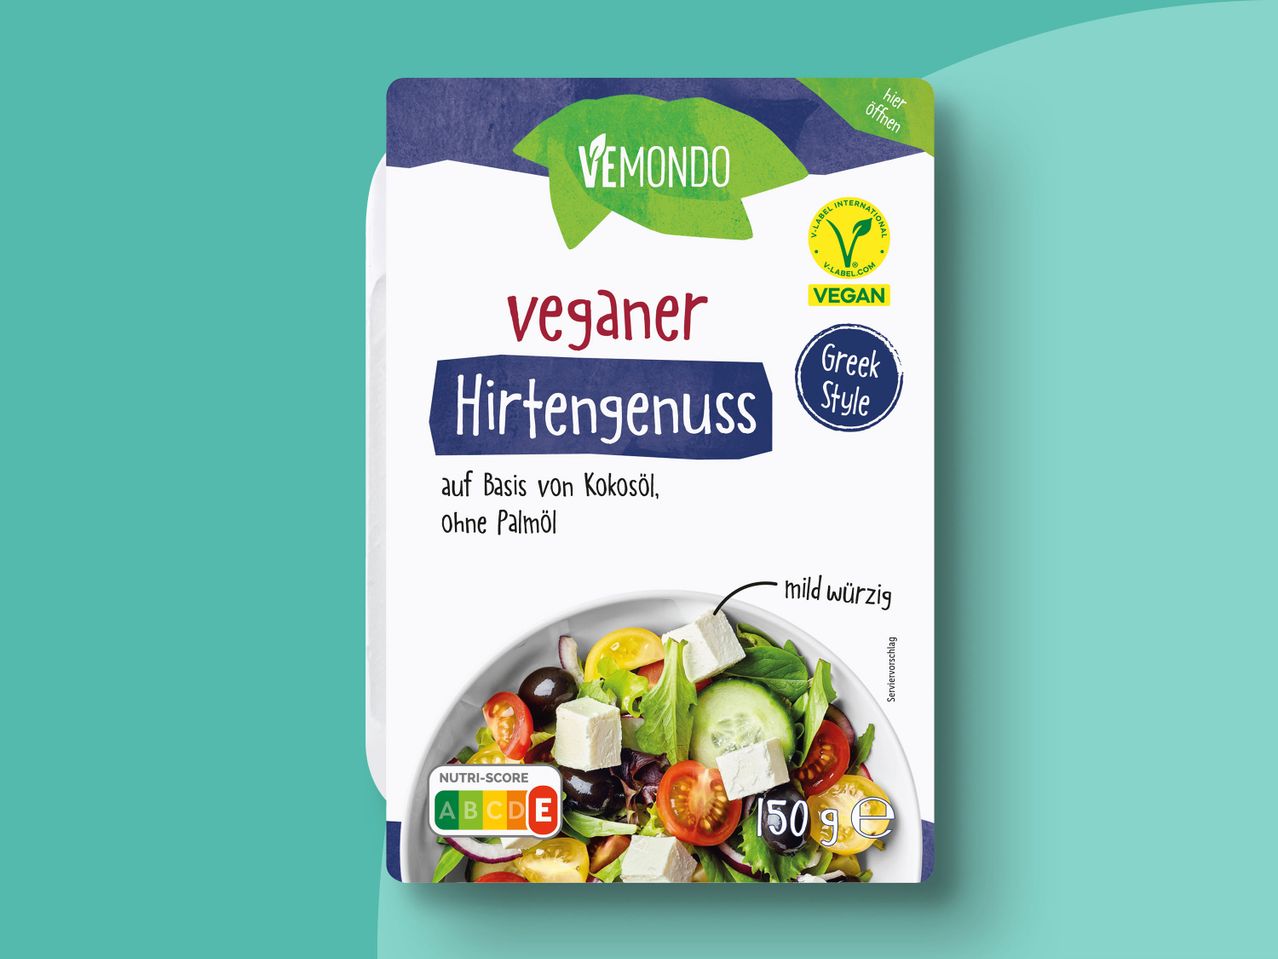 Veganer Hirtengenuss Vemondo